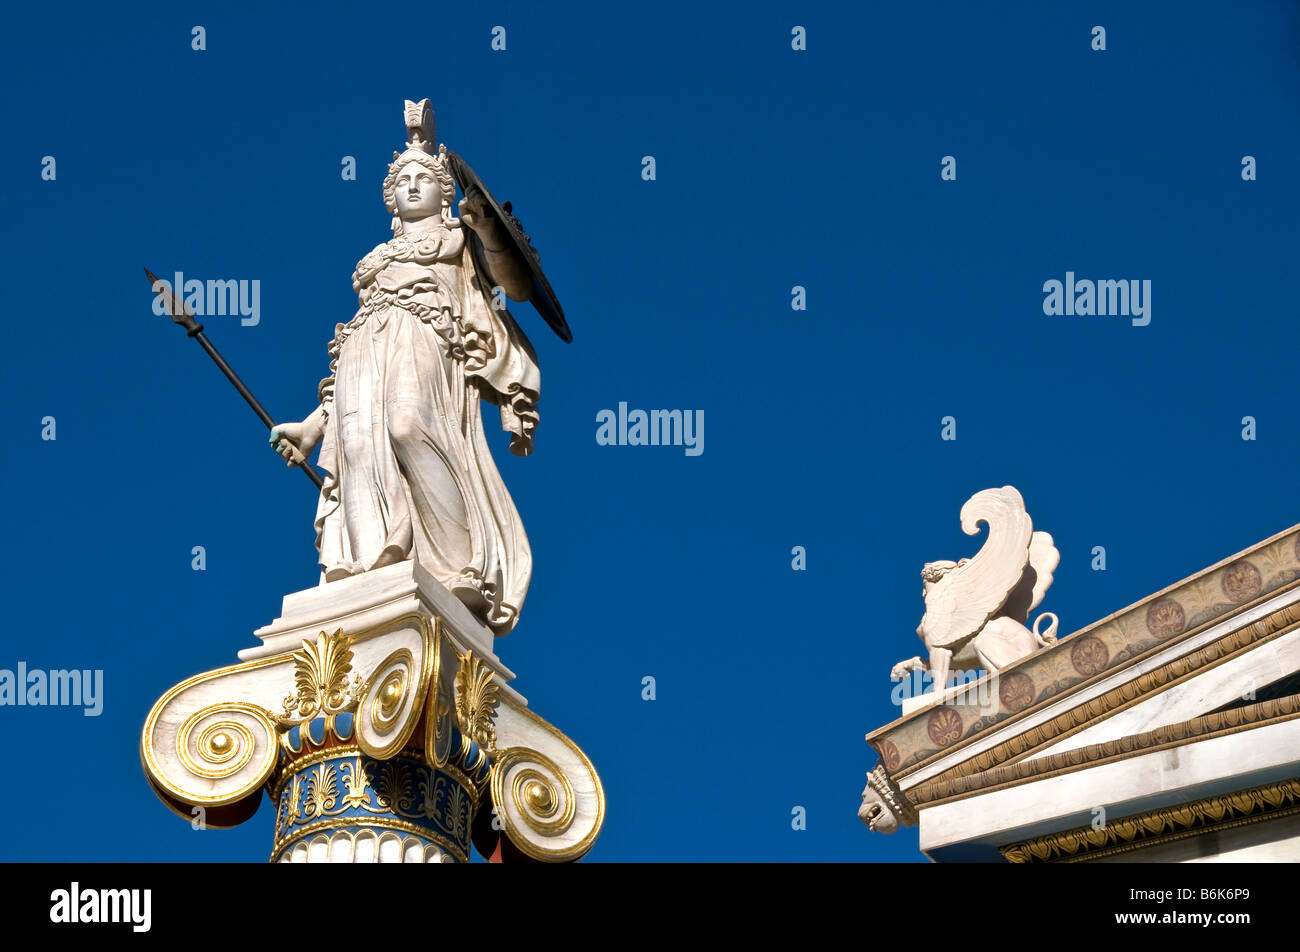 Statua in marmo della dea greca Athena tenendo la lancia e lo scudo, sul lato opposto di un sphynx: Atene, Grecia Foto Stock